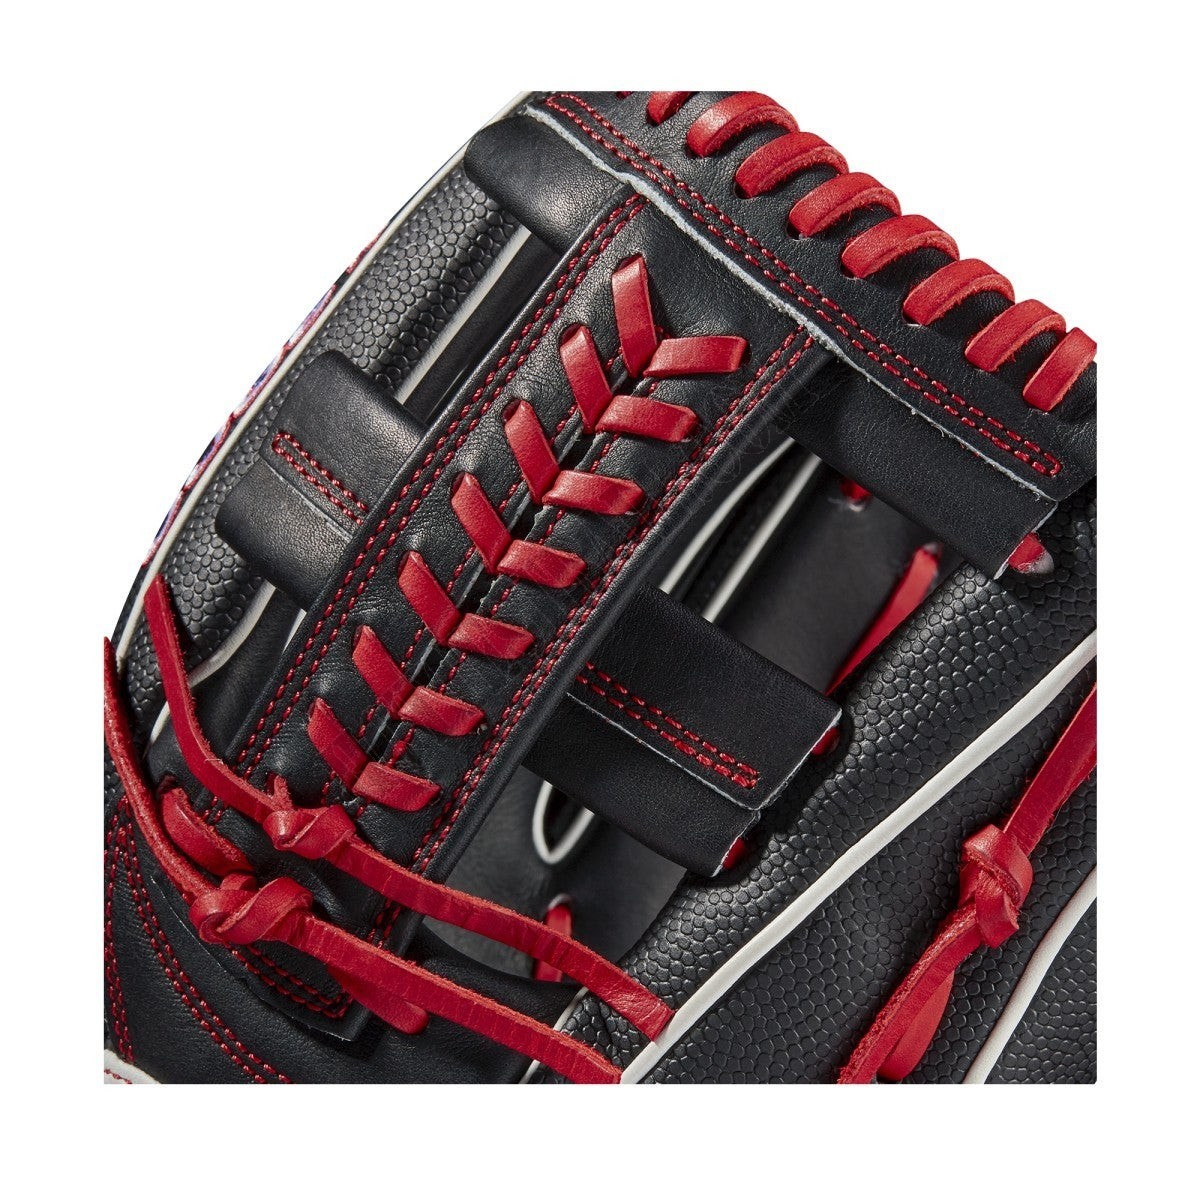 2021 A2000 1785SS 11.75" Infield Baseball Glove ● Wilson Promotions - -5